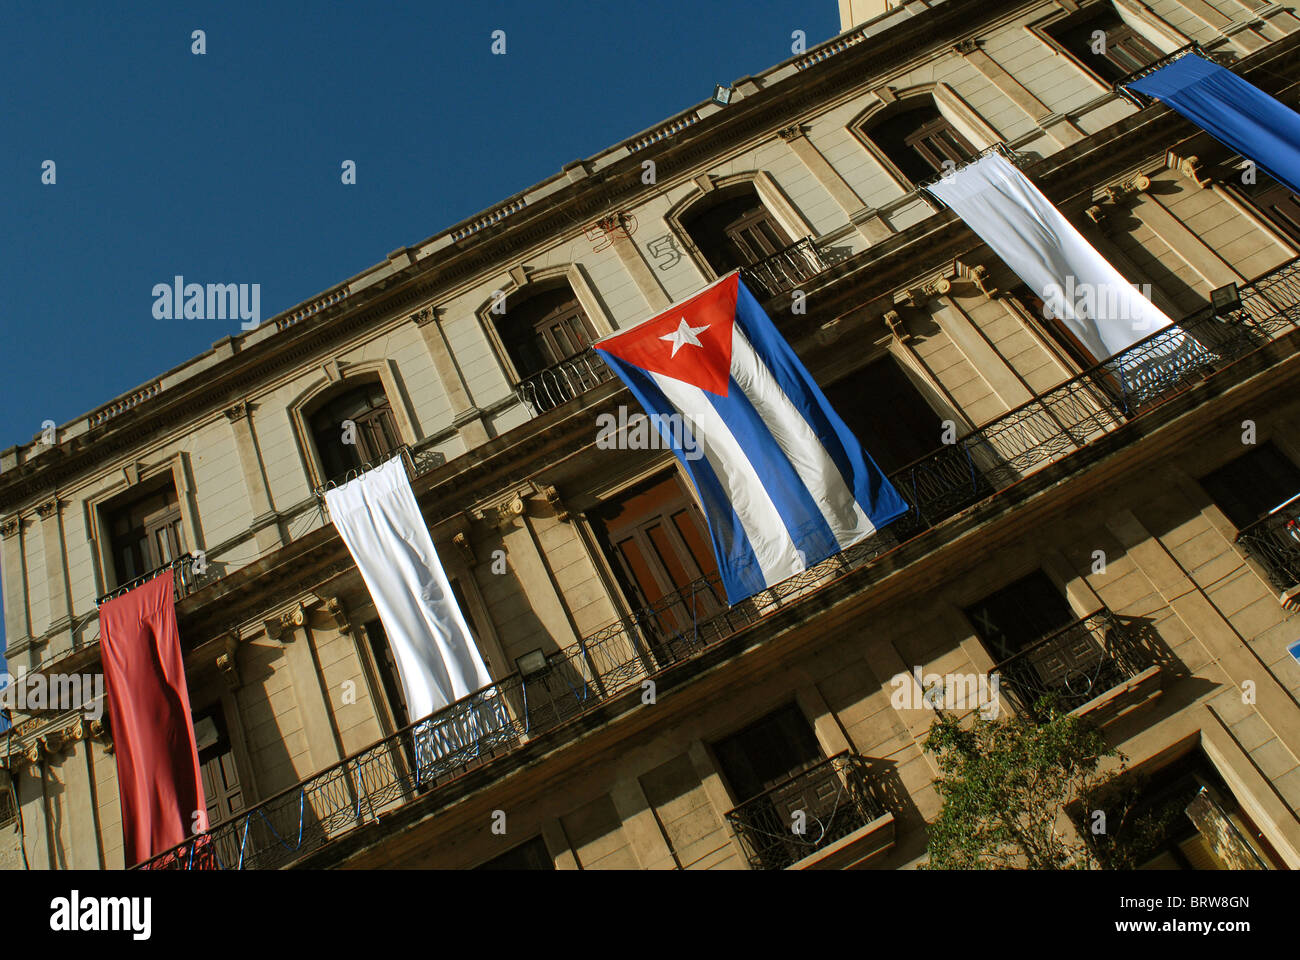 Une rue de La Havane avec un drapeau et banderoles lors de célébrations pour marquer le 50e anniversaire de la révolution cubaine Banque D'Images